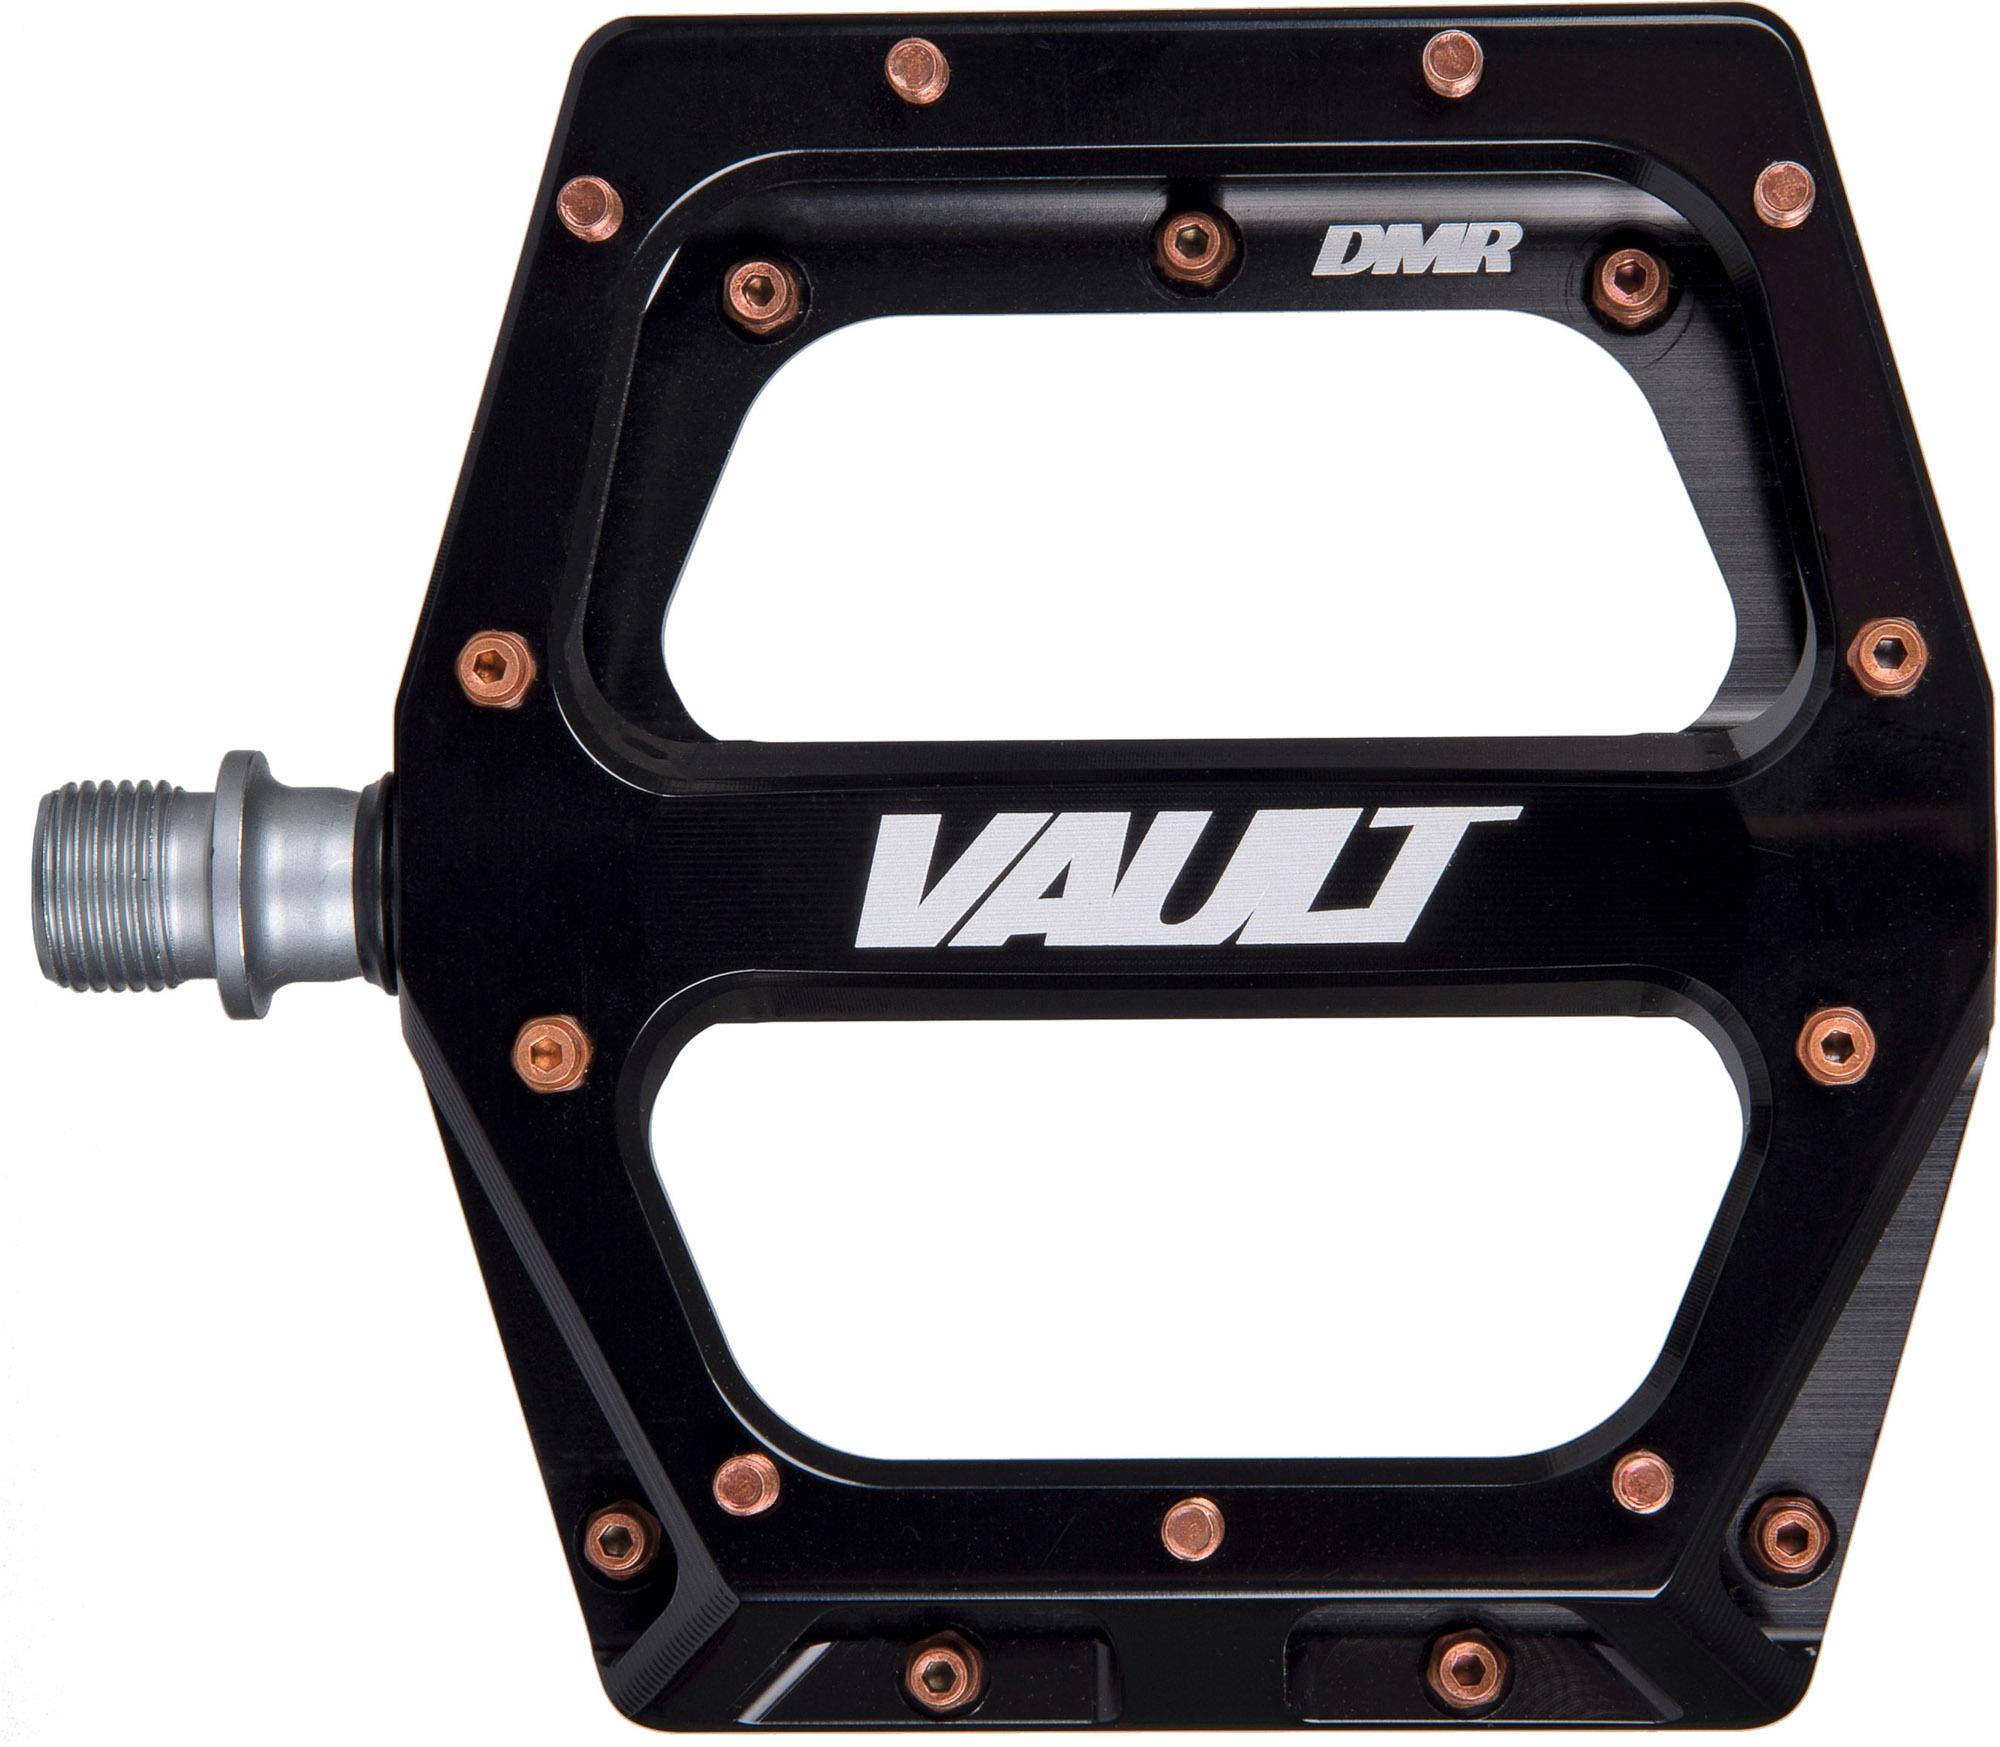 Dmr Vault V2 Pedal Exclusive - Black/copper